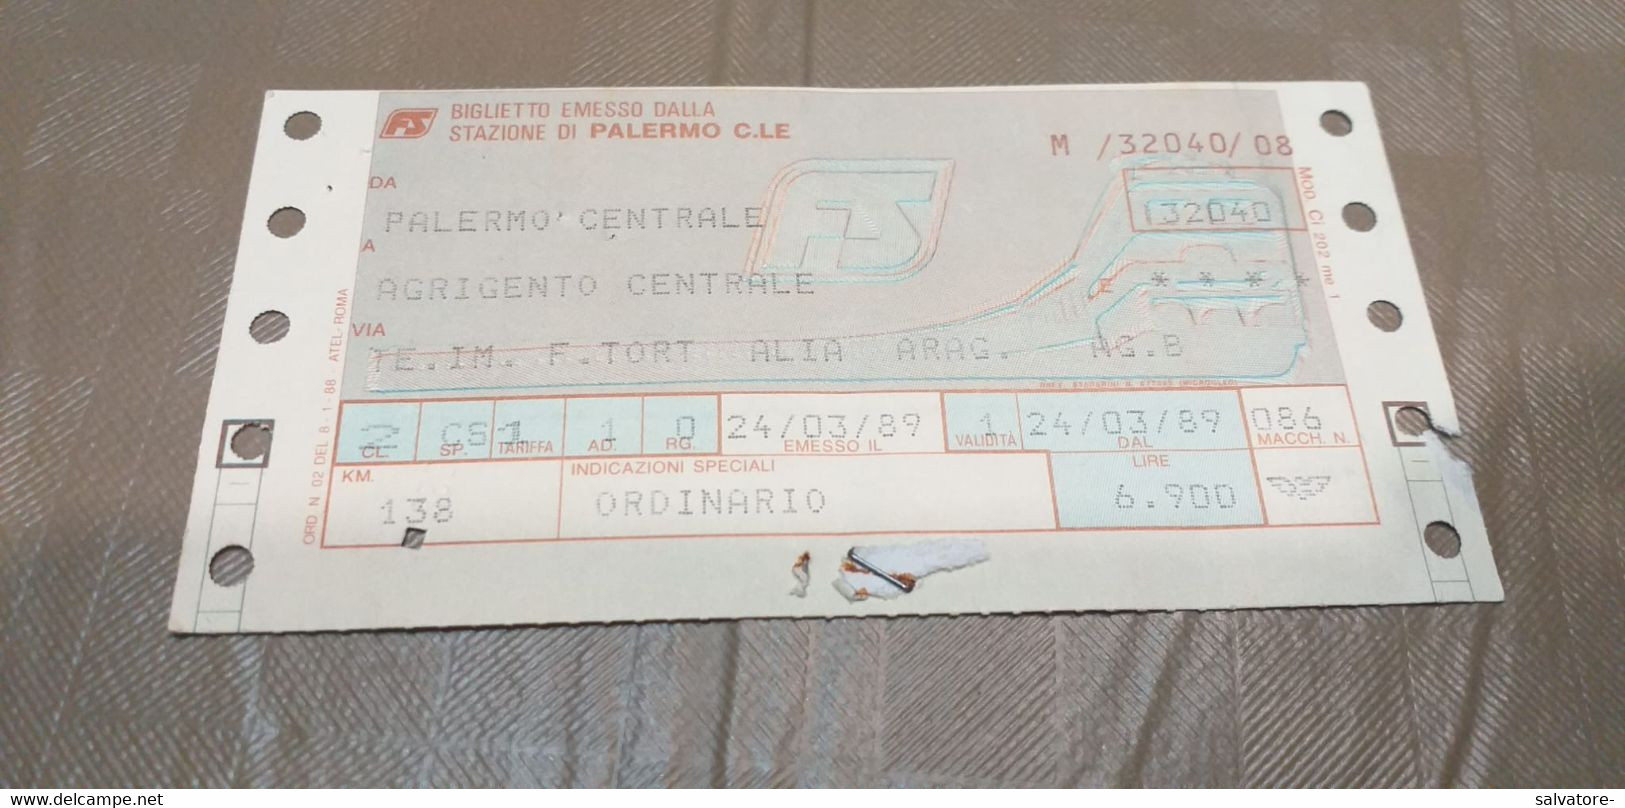 BIGLIETTO DA PALERMO  CENTRALE A AGRIGENTO CENTRALE 1989 - Europe